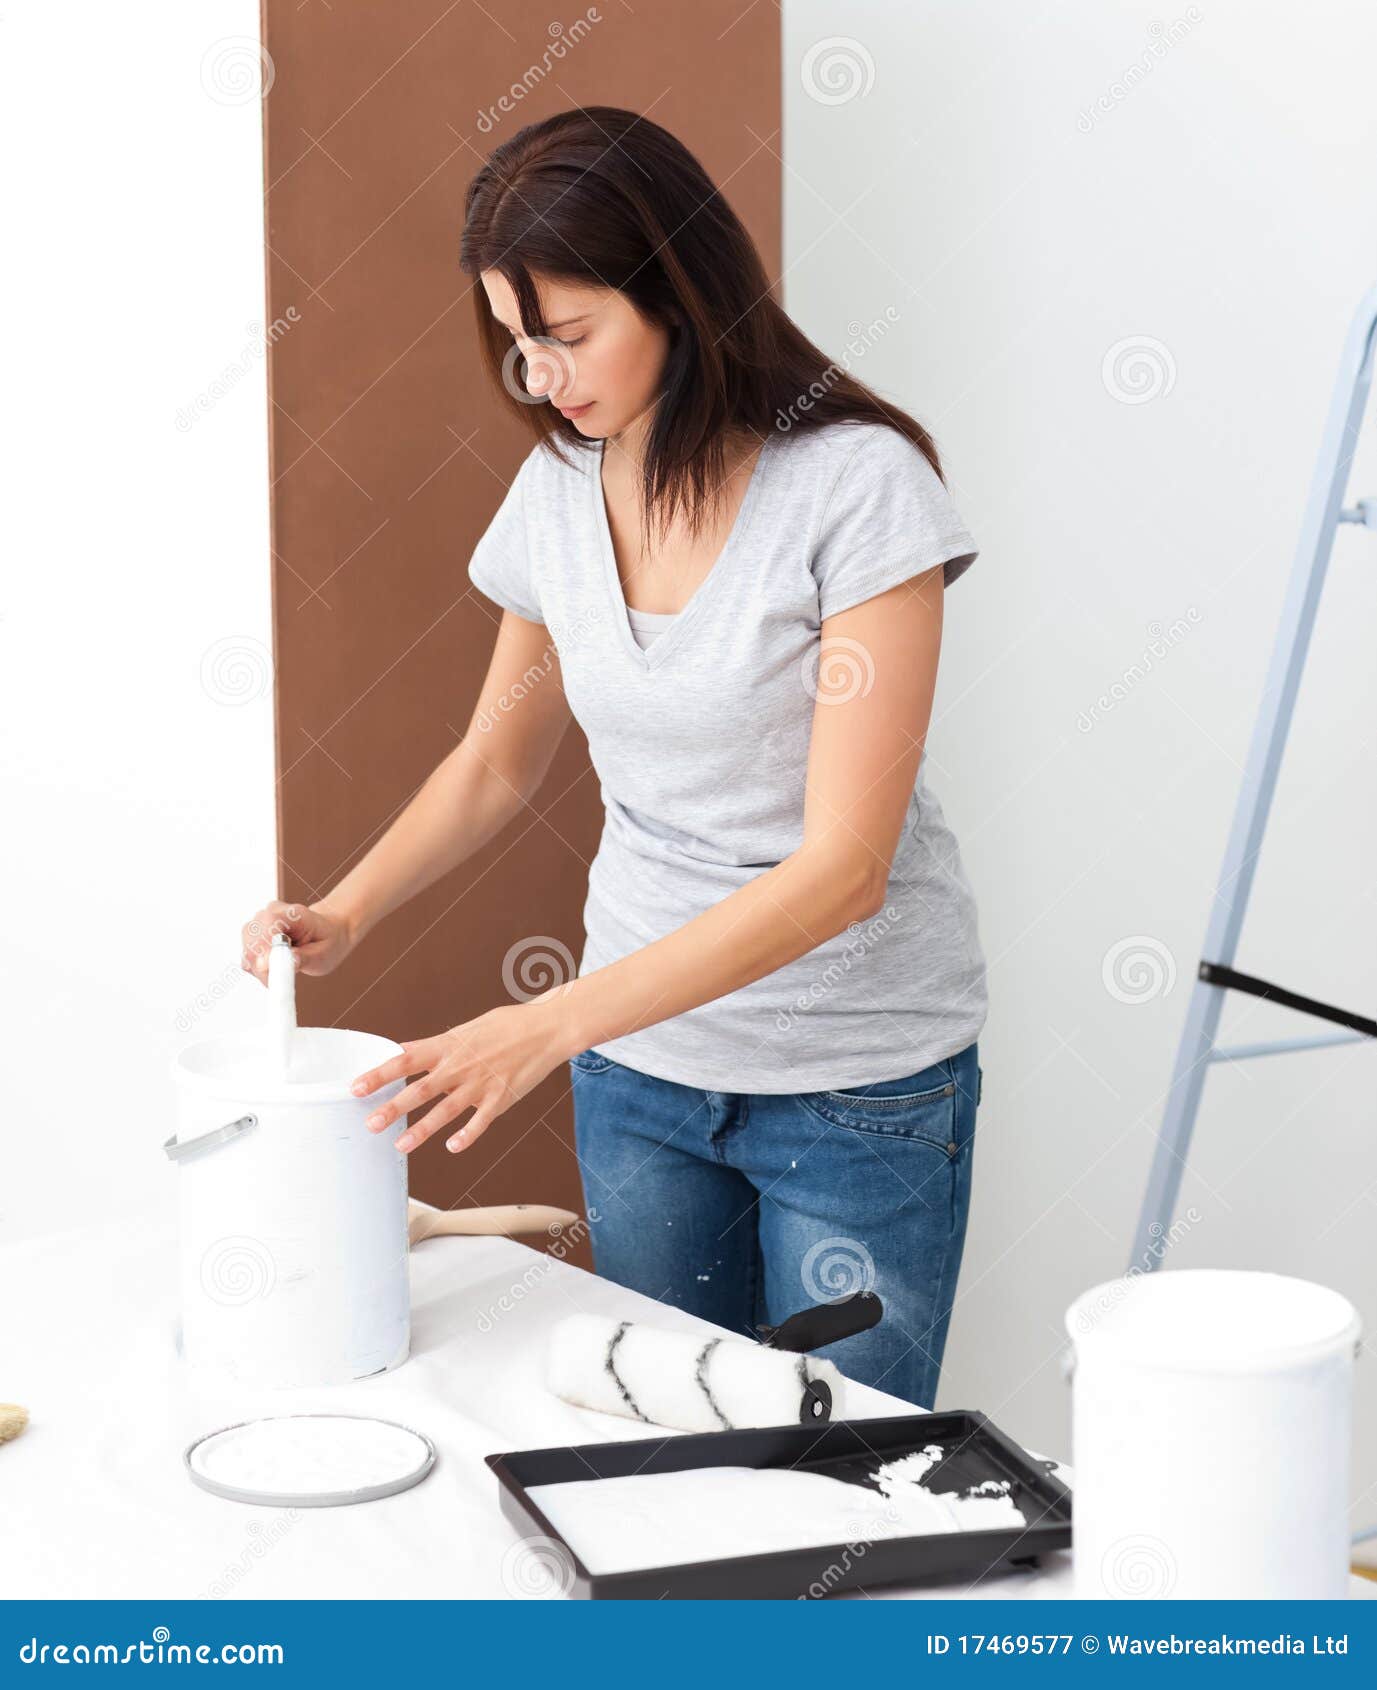 pretty woman preparing white paint to renovate